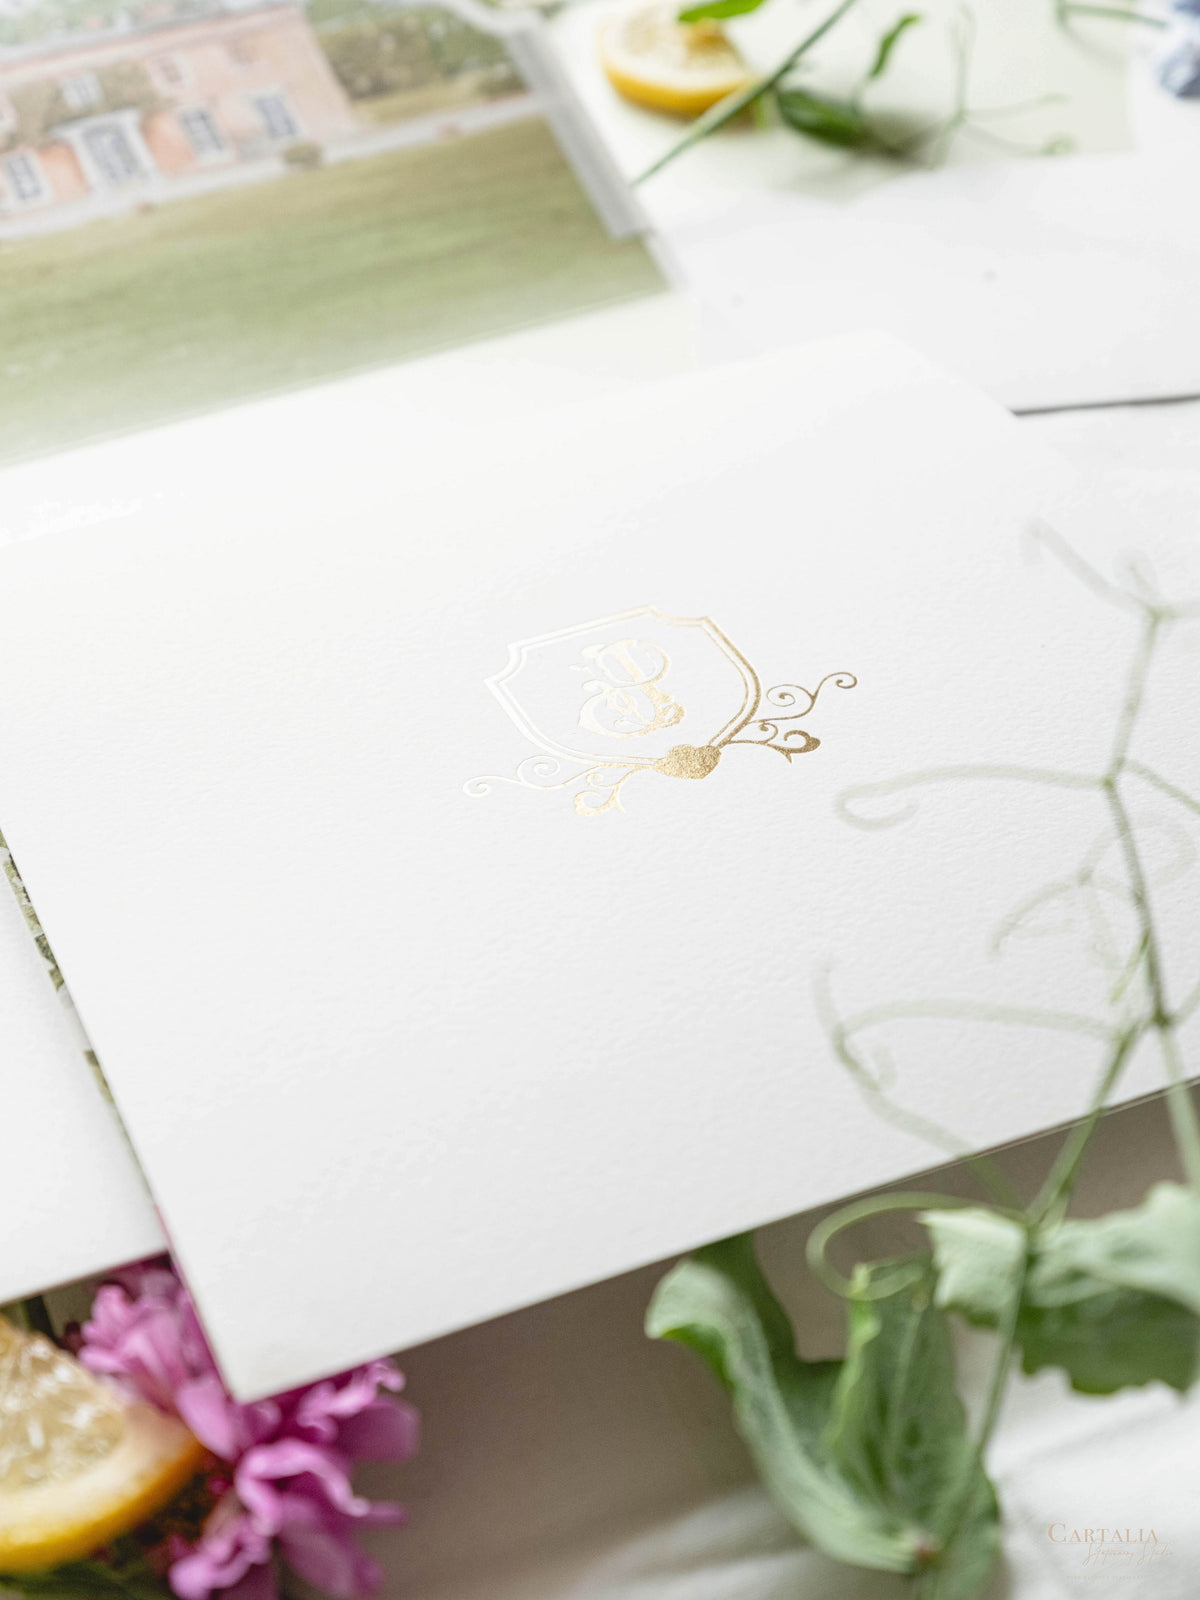 Libro a medida estilo en caja bolsillo hecho a mano de lujo | Motivos florales de limón en acuarela